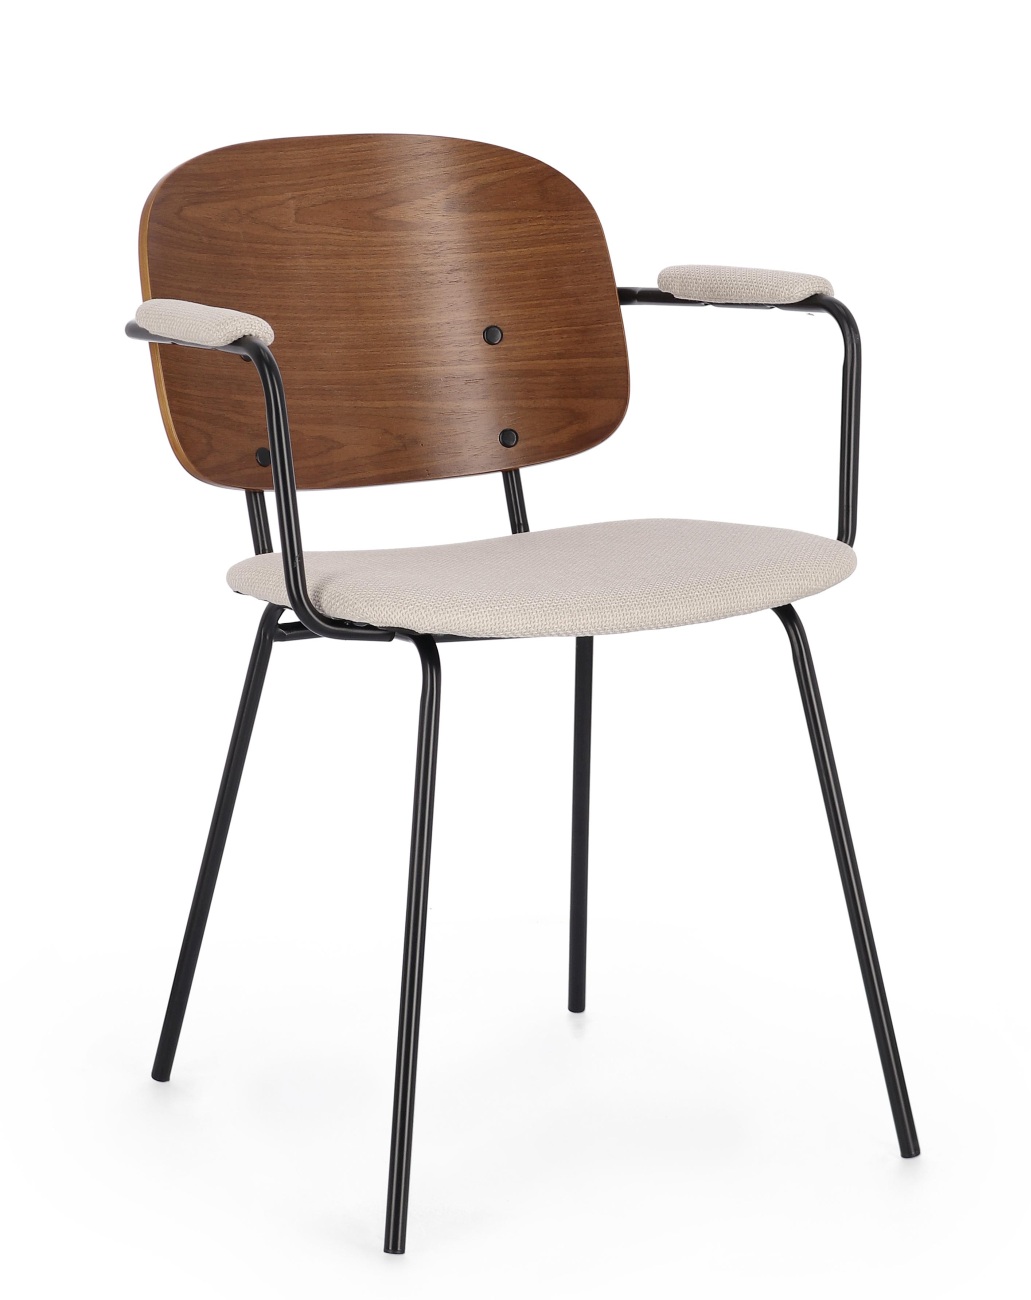 Der Esszimmerstuhl Sienna überzeugt mit seinem modernen Stil. Gefertigt wurde er aus Stoff, welcher einen Beigen Farbton besitzt. Das Gestell ist aus Metall und hat eine schwarze Farbe. Der Stuhl besitzt eine Sitzhöhe von 48 cm.